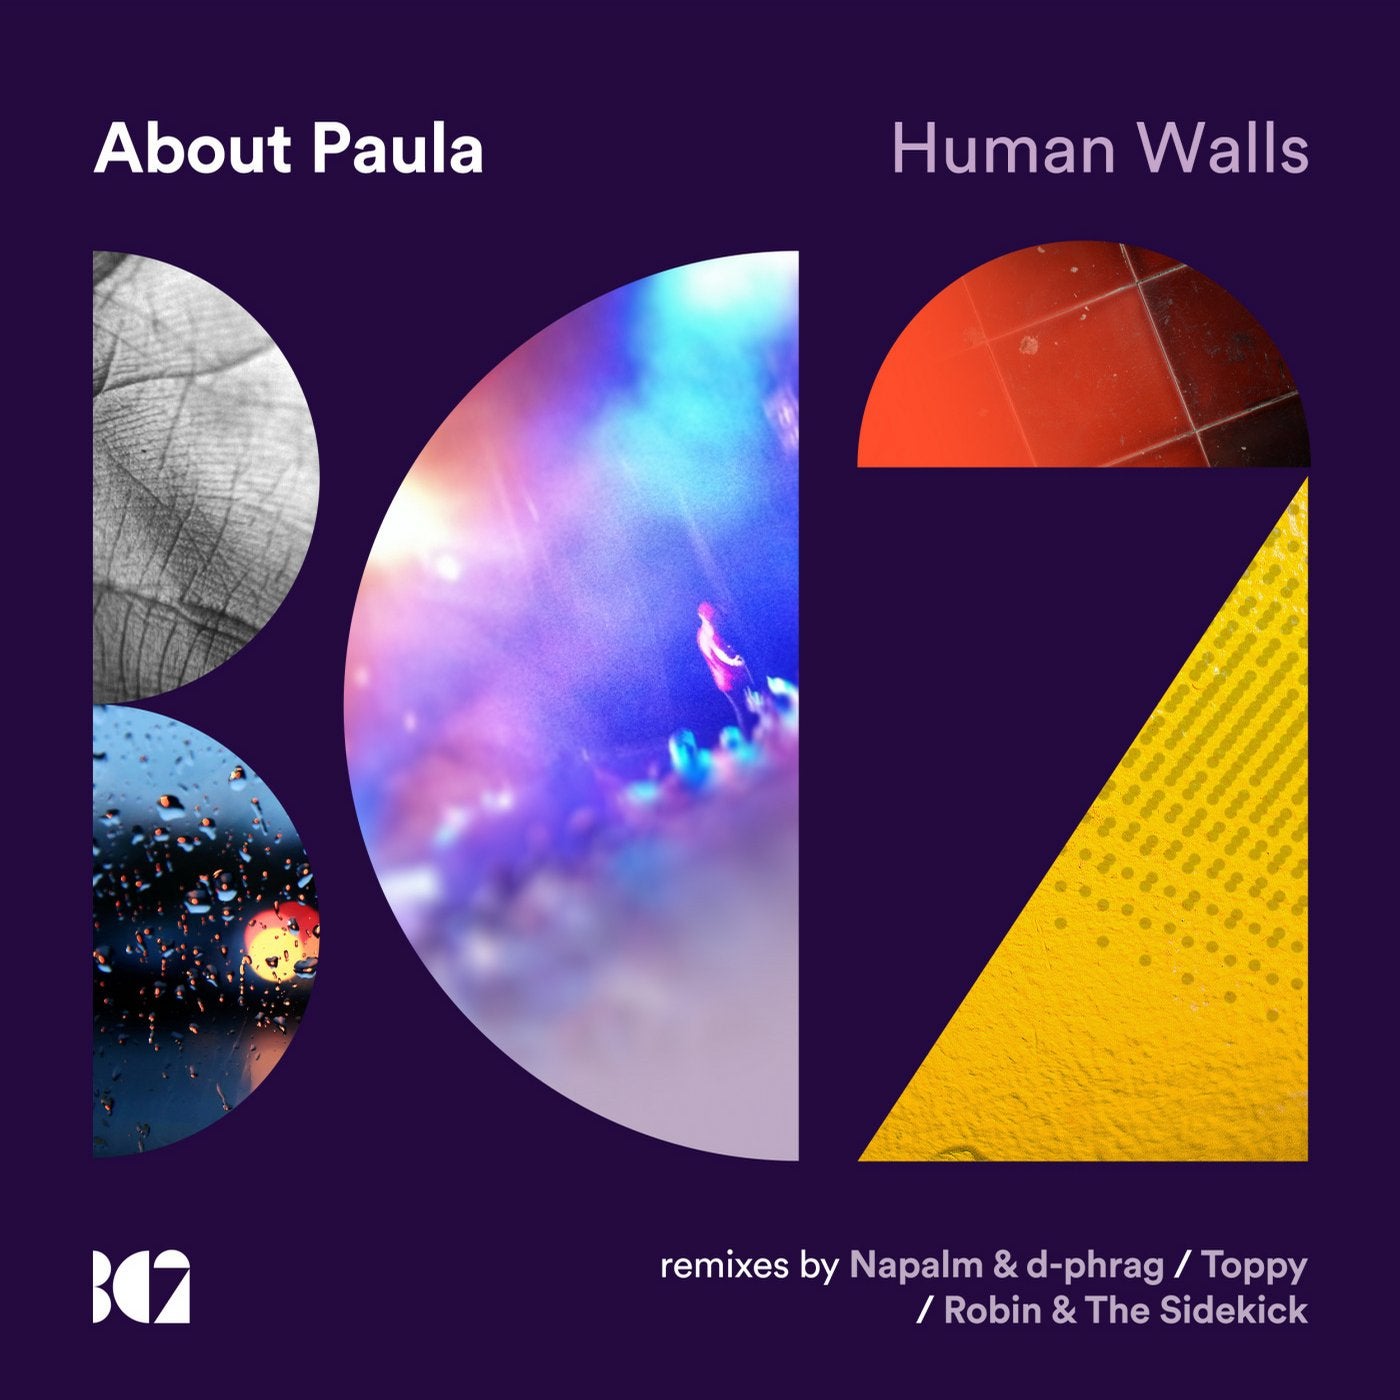 Human Walls